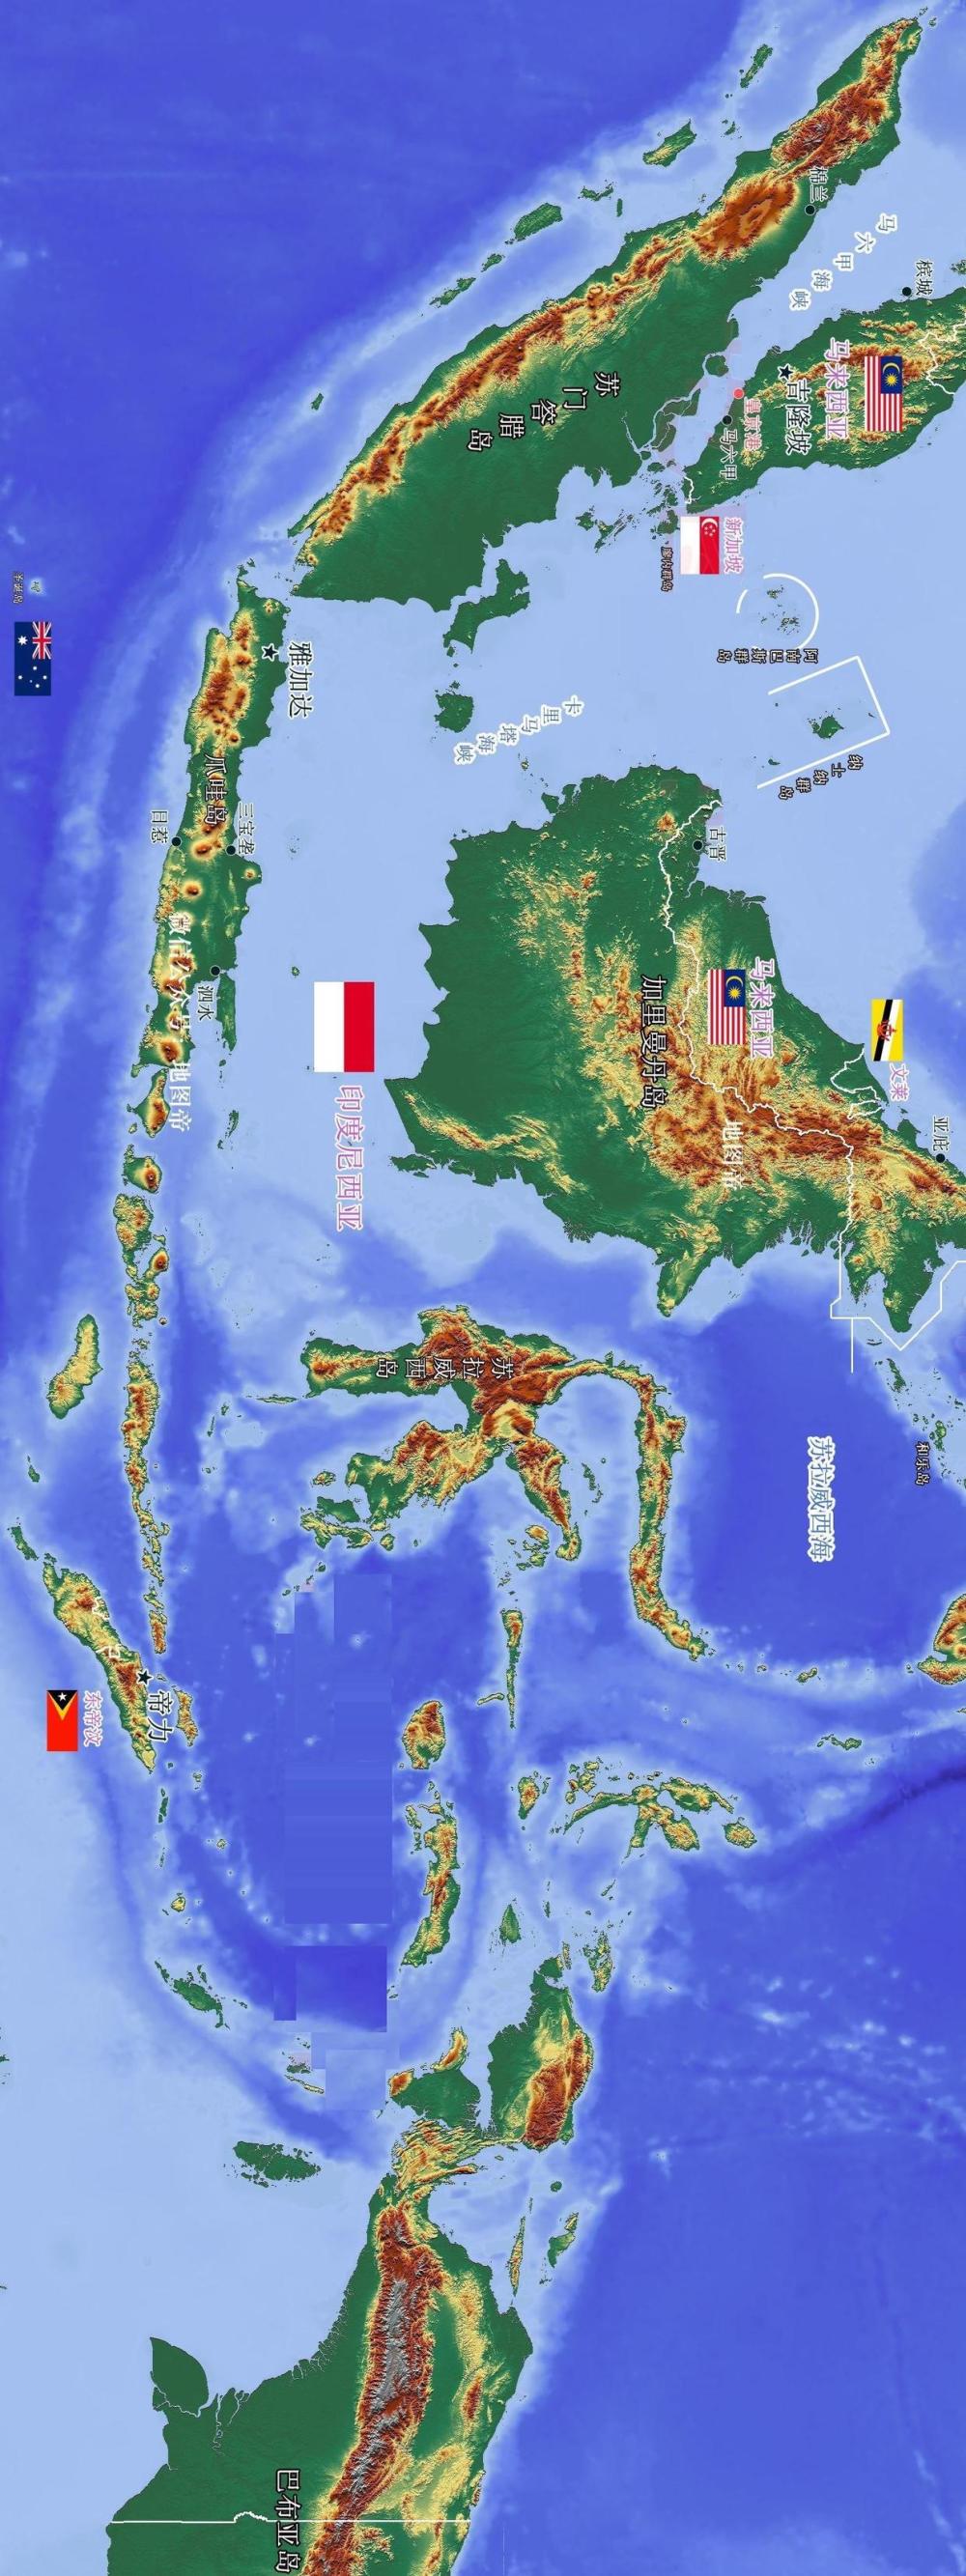 位于亚洲东南部的世界上最大群岛"马来群岛",分属于哪些国家?